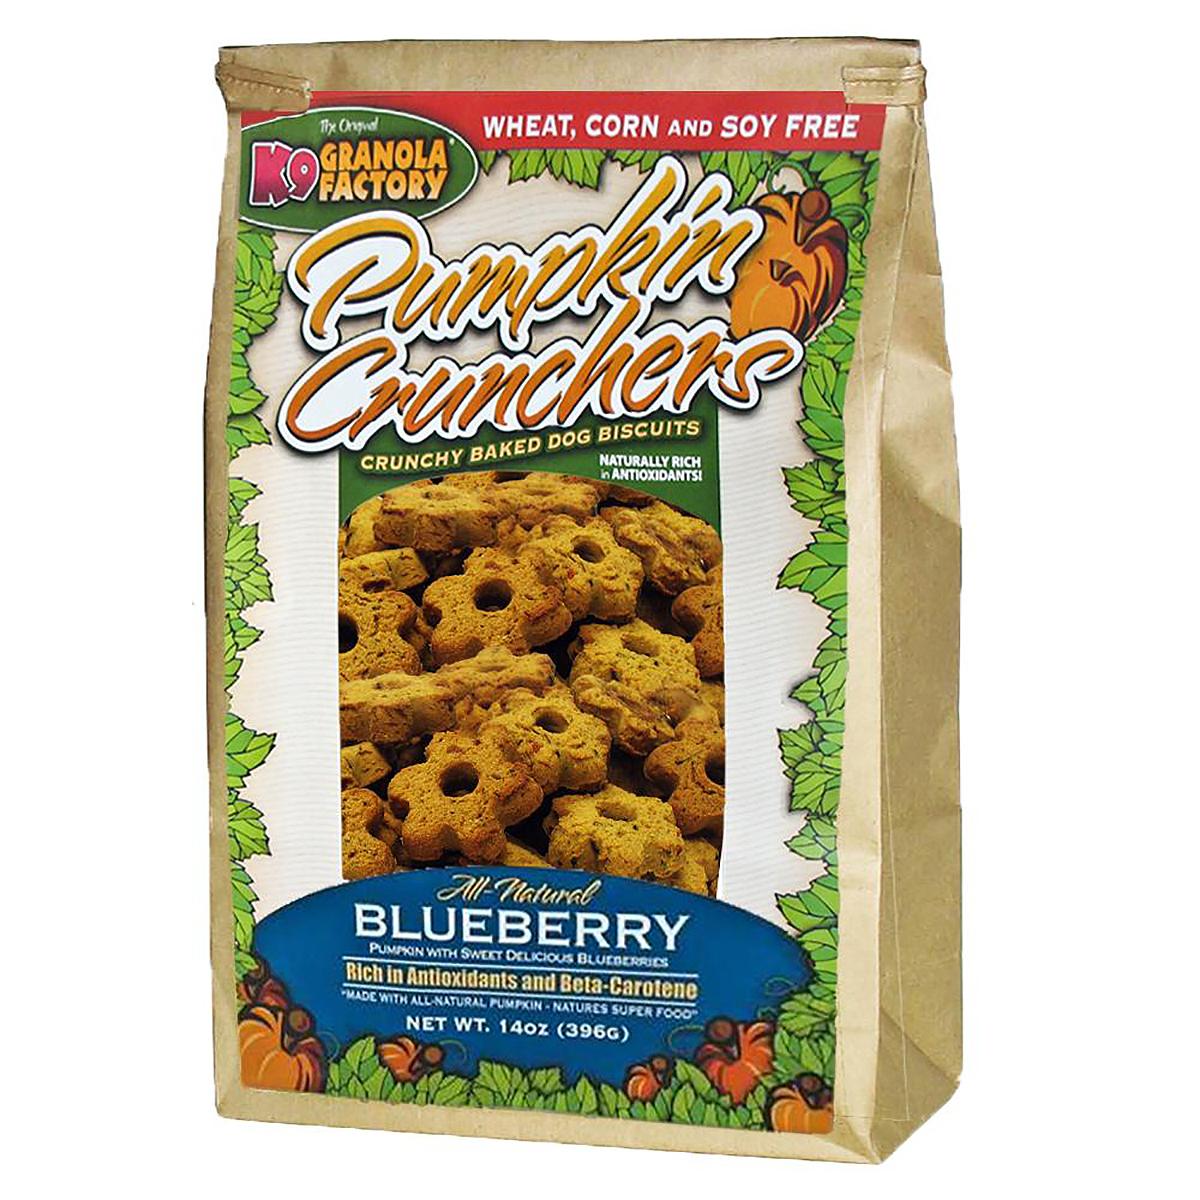 K9 Granola Factory Pumpkin Crunchers Dog Treats - Blueberry